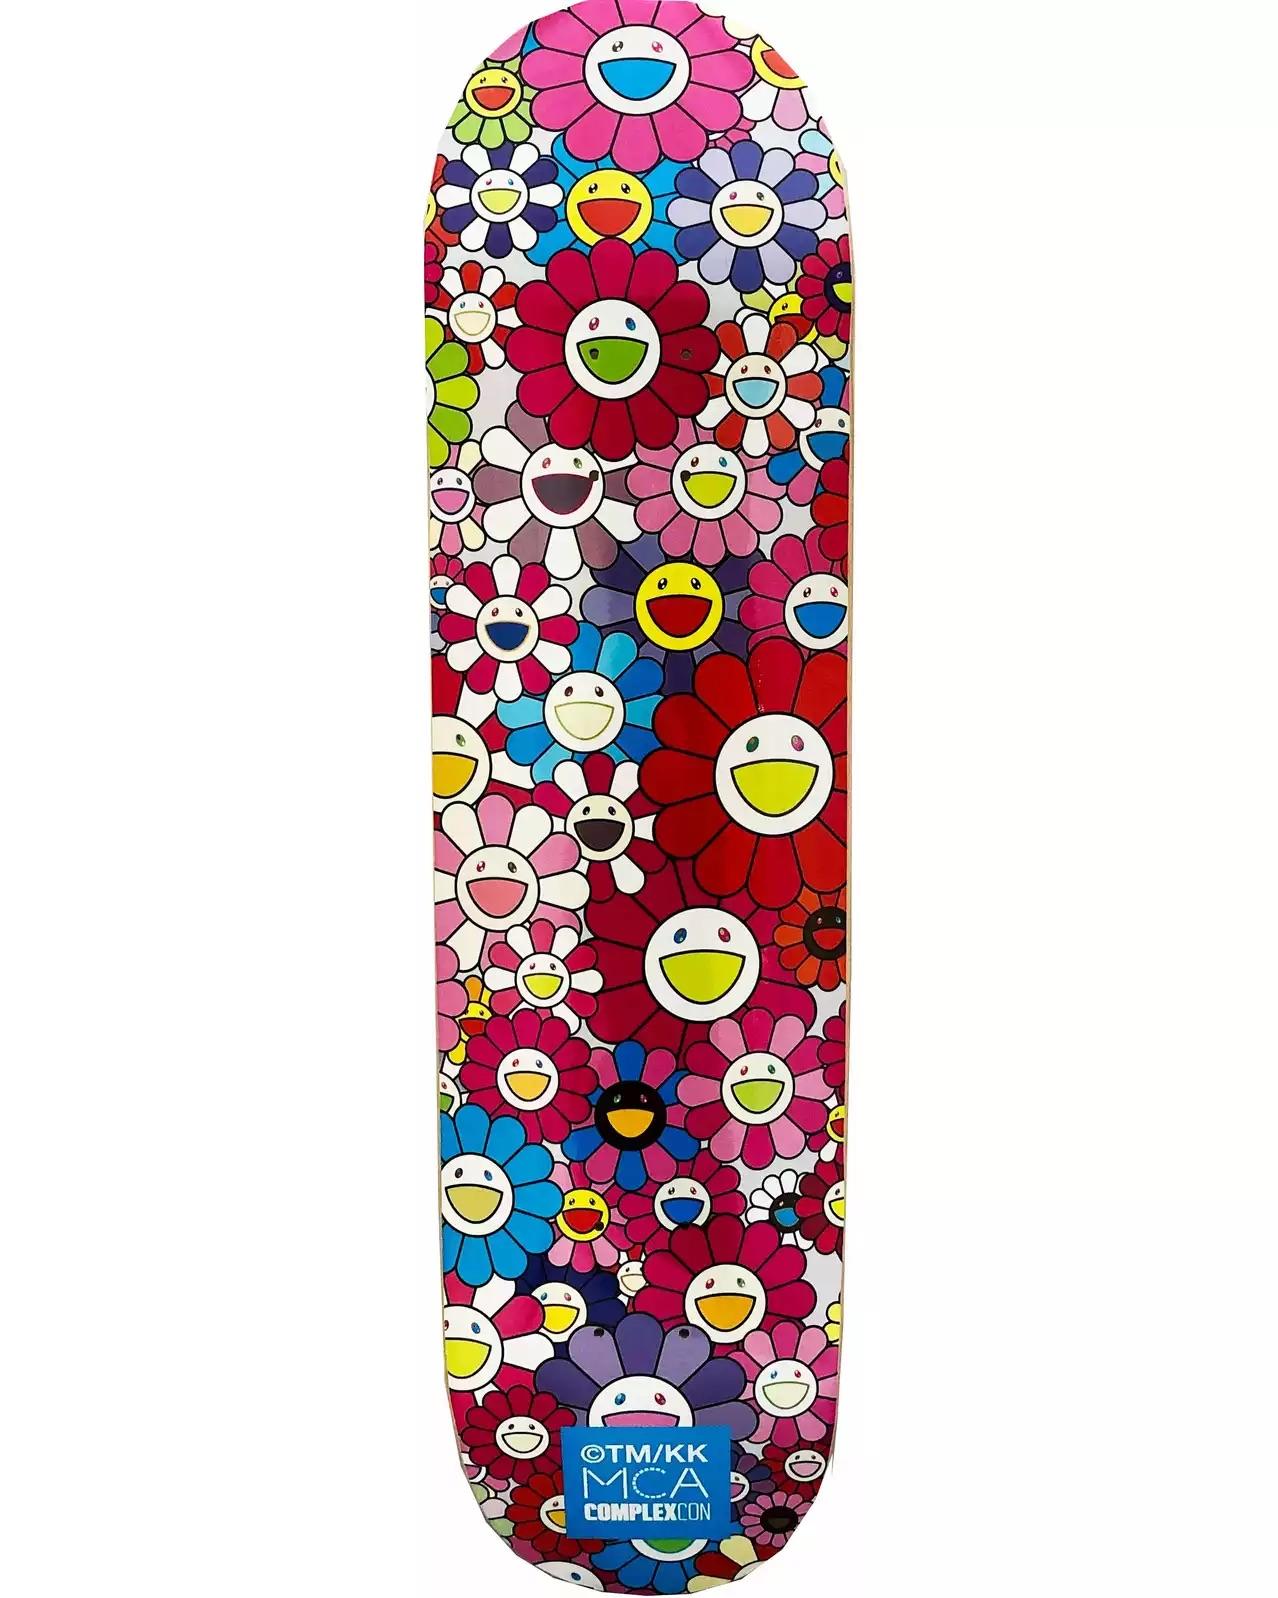 Takashi Murakami Flowers Skate Deck :
Une pièce vibrante d'art mural de Takashi Murakami produite en série limitée à l'occasion de l'exposition Murakami 2017 : The Octopus Eats Its Own Leg, MCA Chicago. Ce jeu est neuf dans son emballage d'origine.